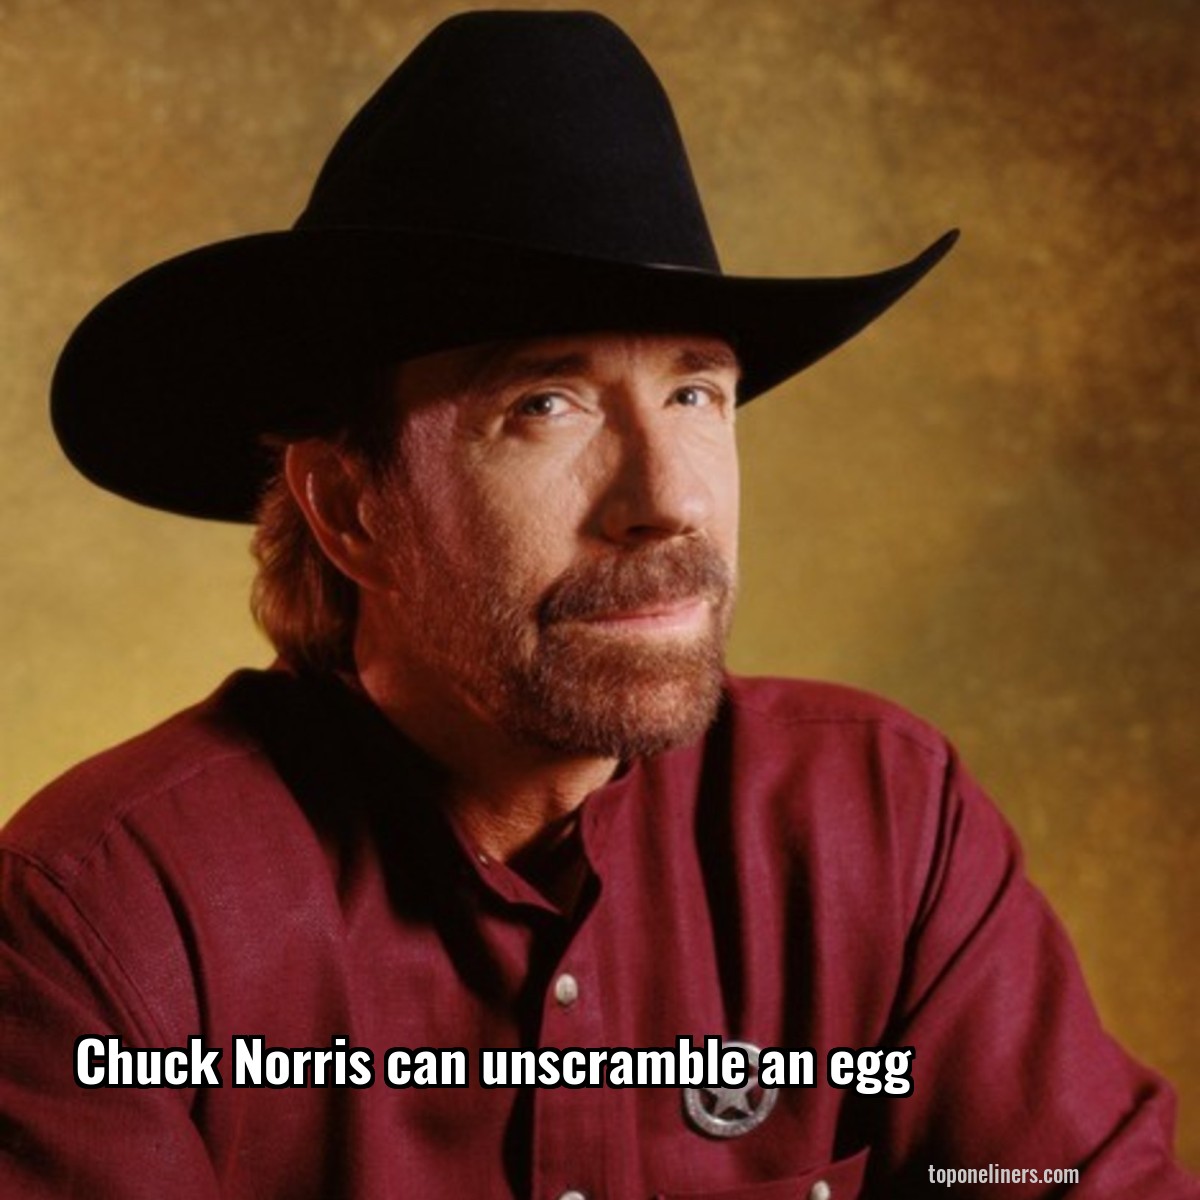 Chuck Norris can unscramble an egg